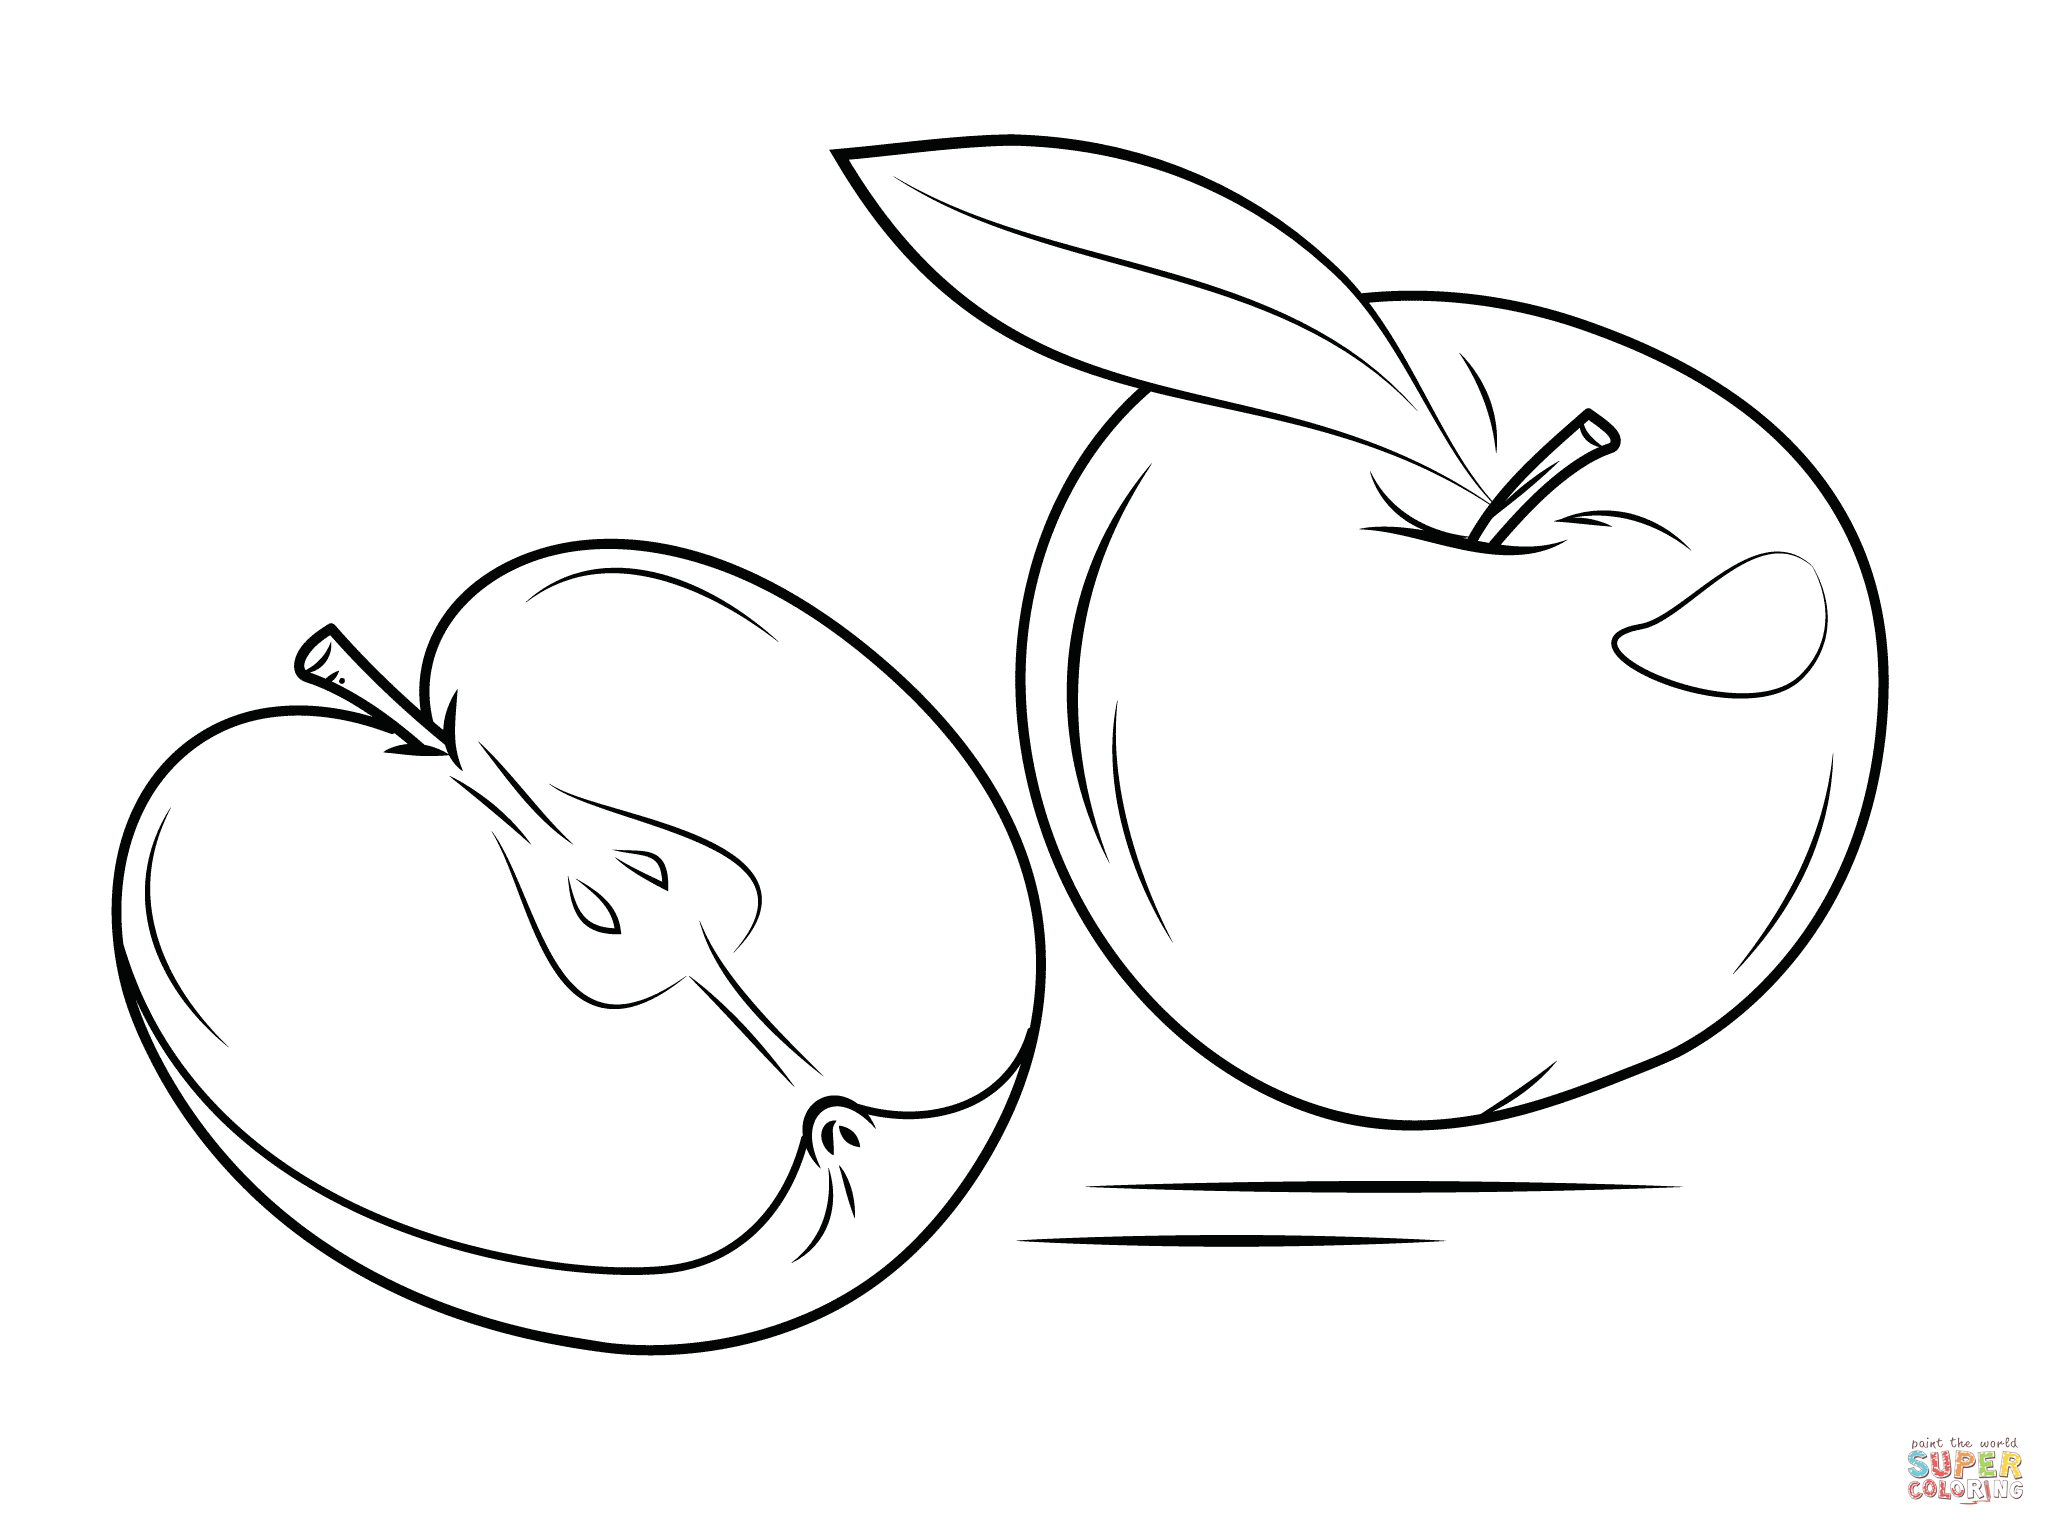 Ausmalbilder Äpfel - Malvorlagen Kostenlos Zum Ausdrucken mit Ausmalbild Apfel